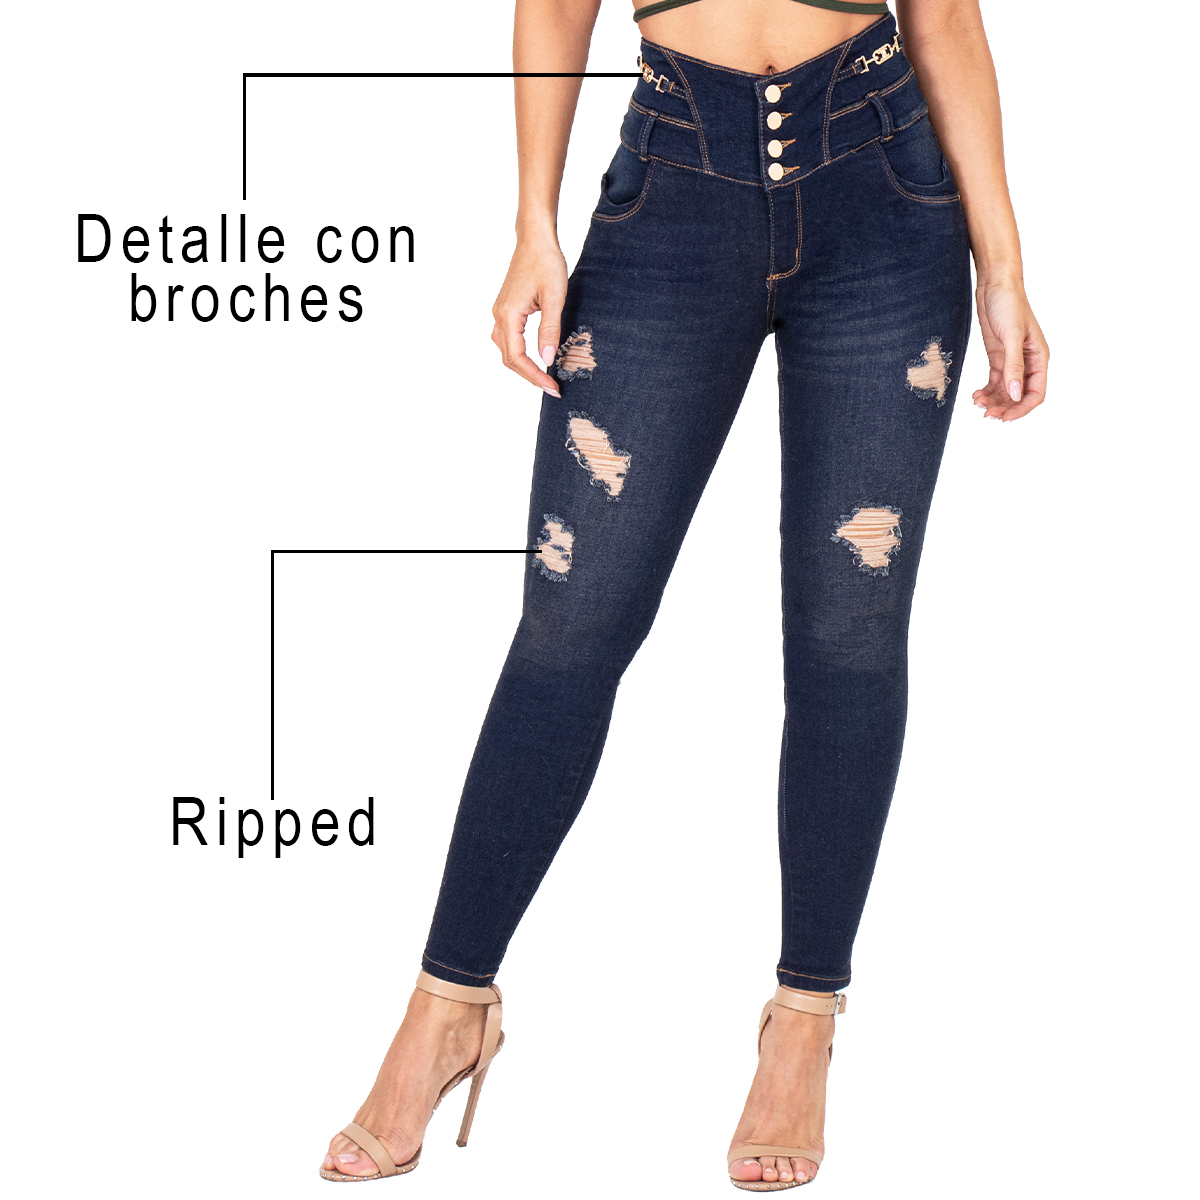 Los jeans colombianos con faja interna cuentan con tres niveles de broches que ayuda a moldear la cintura y controlar el abdomen. Estilizar la figura.